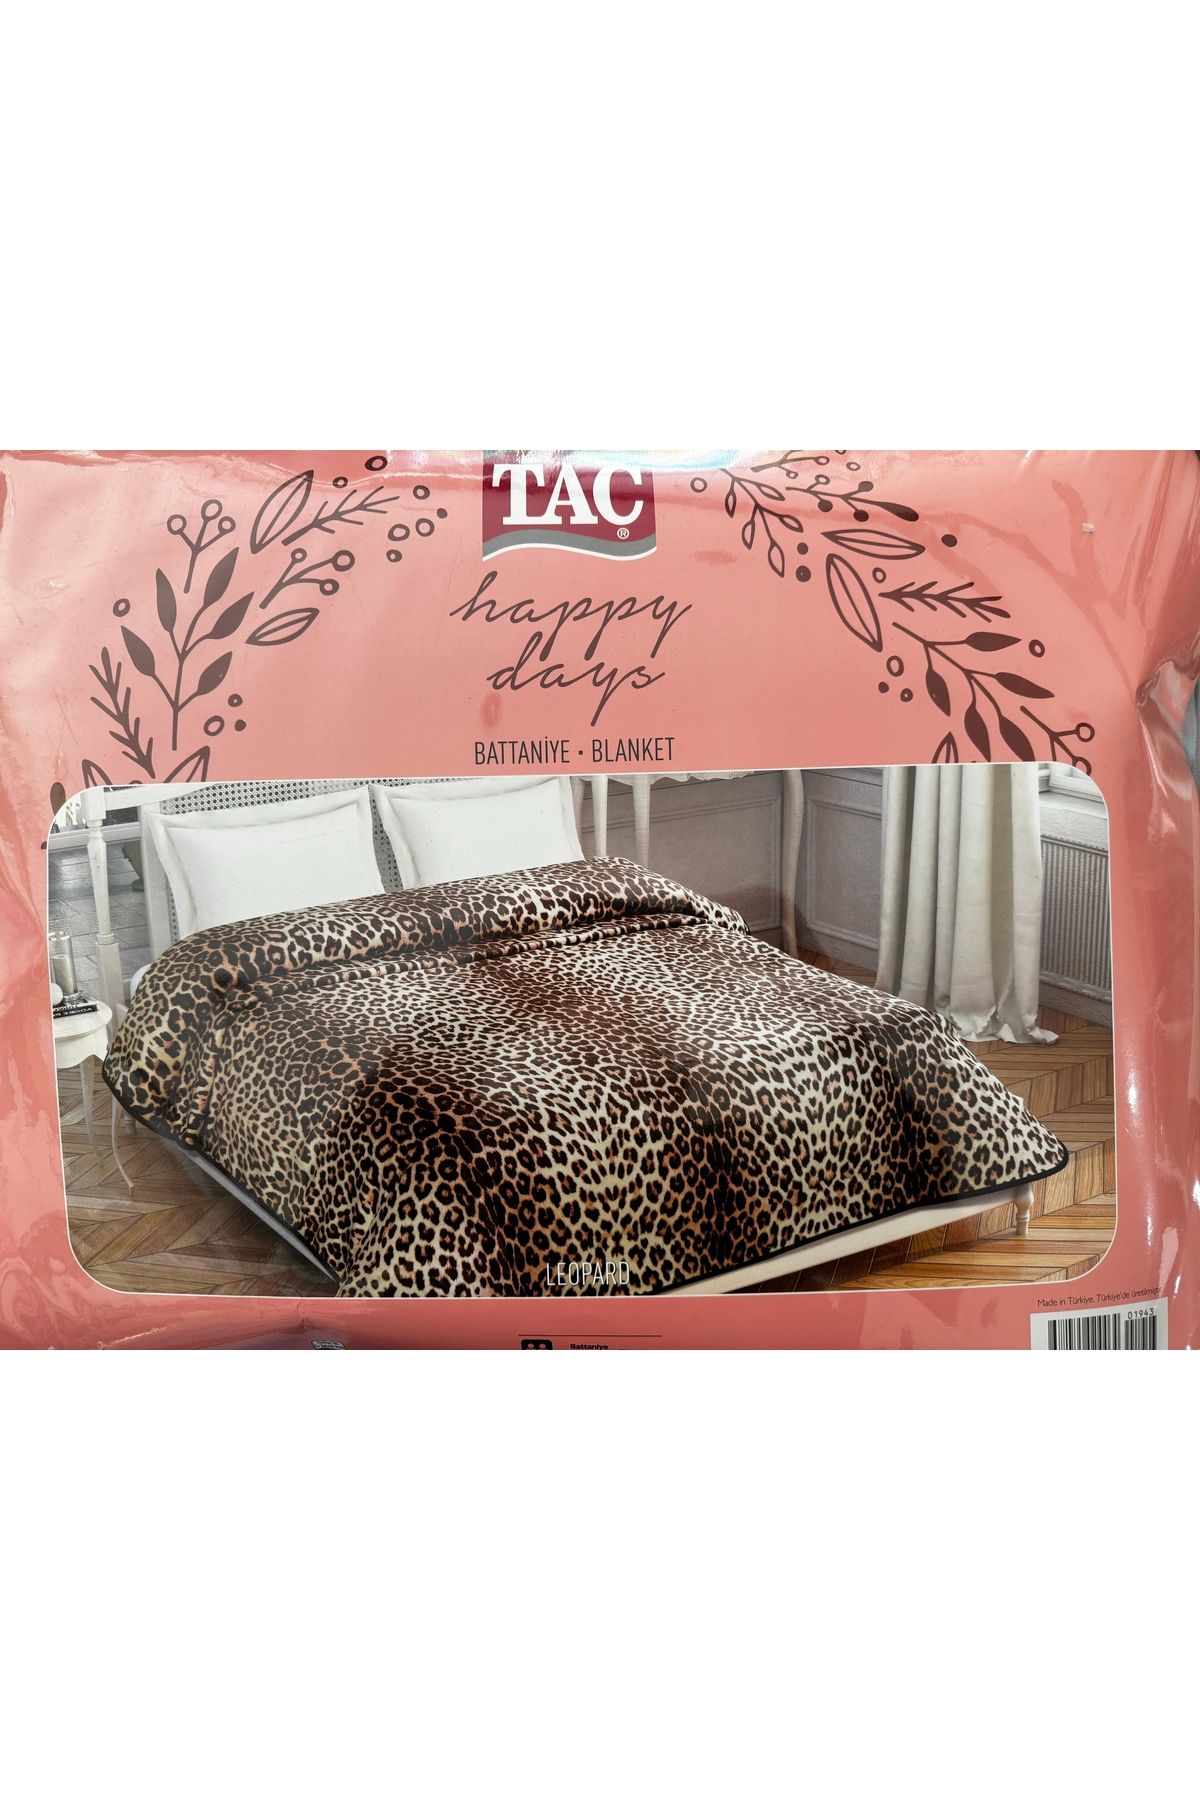 Taç leopard cift kisilik battaniye